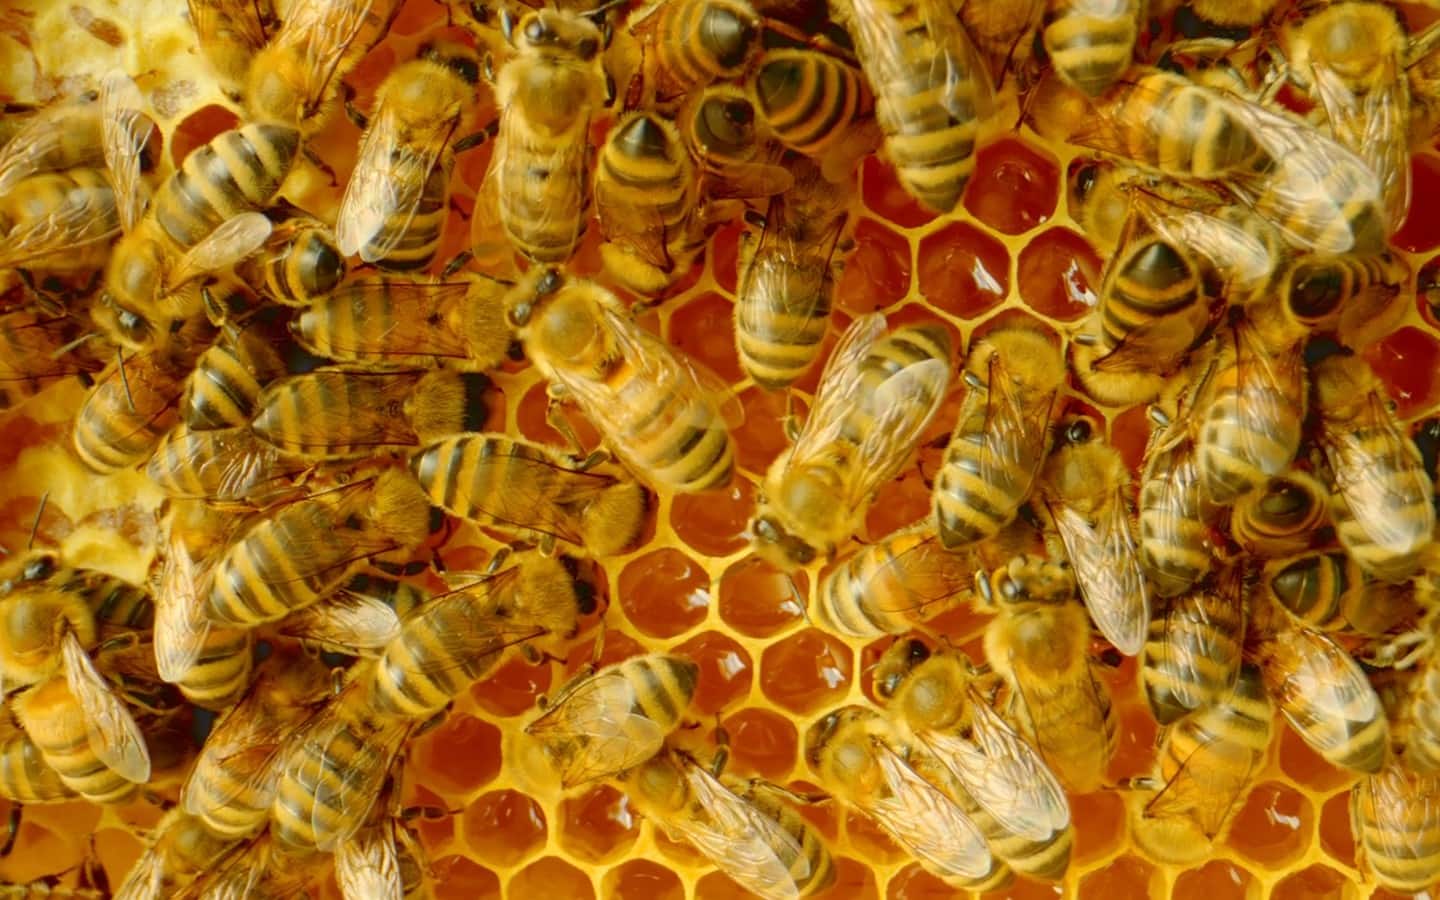 In einem der Imagevideos werden die Mitarbeiter:innen mit einem Bienenvolk verglichen